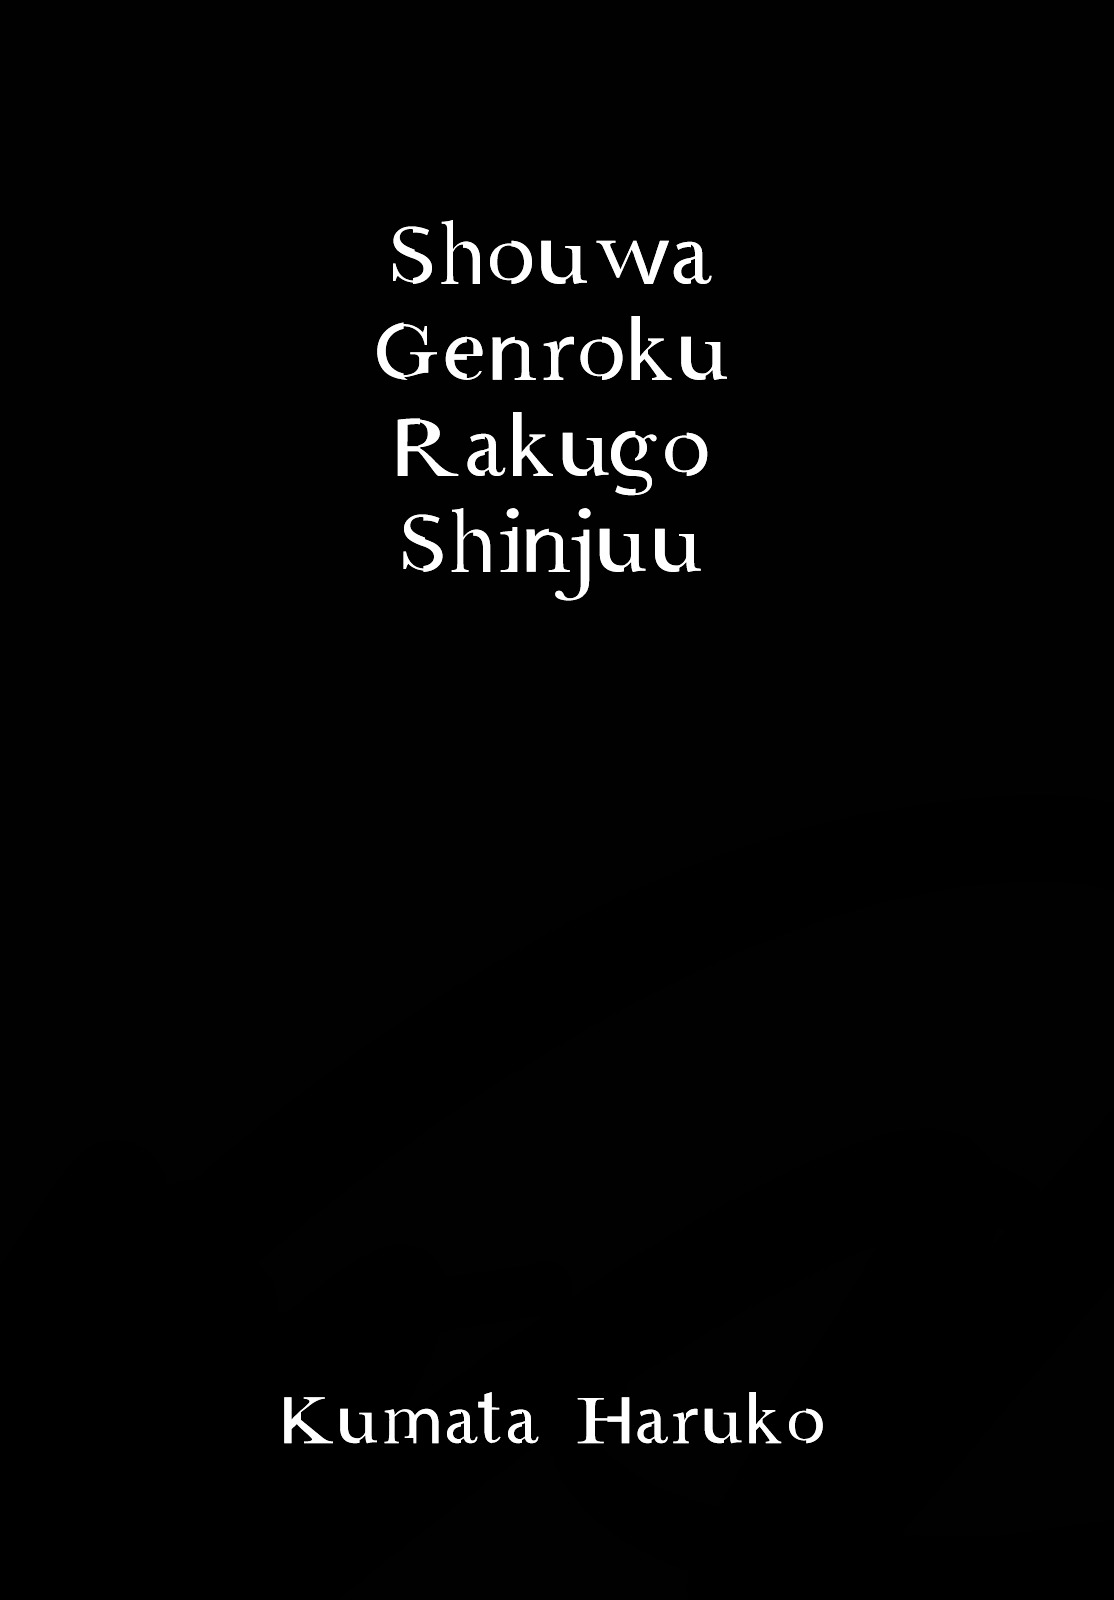 Shouwa Genroku Rakugo Shinjuu - Page 2